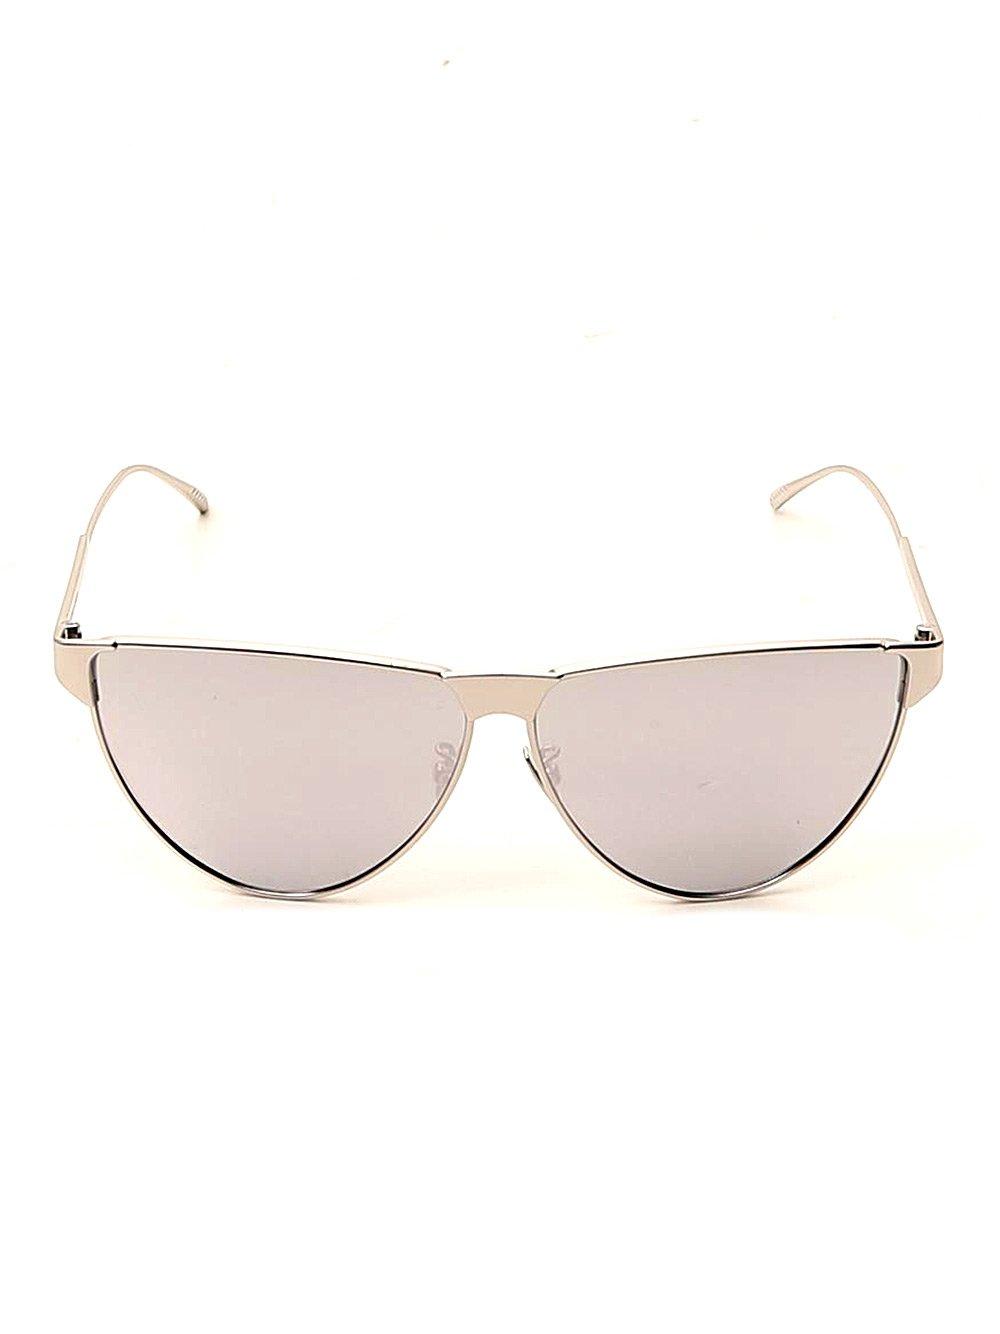 Bottega Veneta Eyewear Aviator Sunglasses